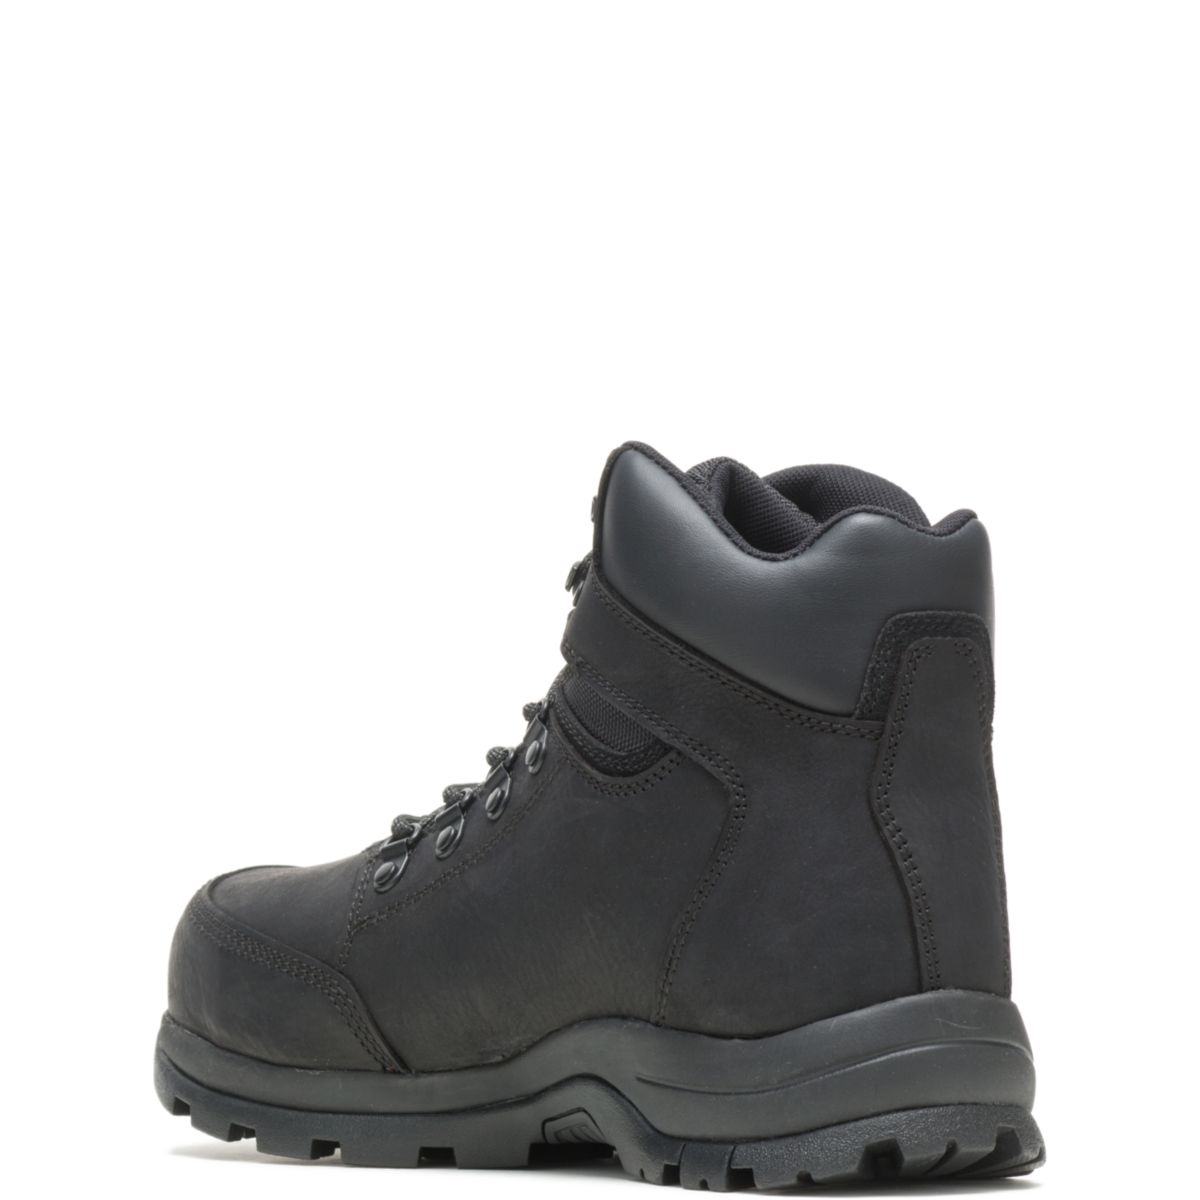 WOLVERINE Men's Grayson Steel Toe Waterproof Work Boot Black - W211042 BLACK - BLACK, 13